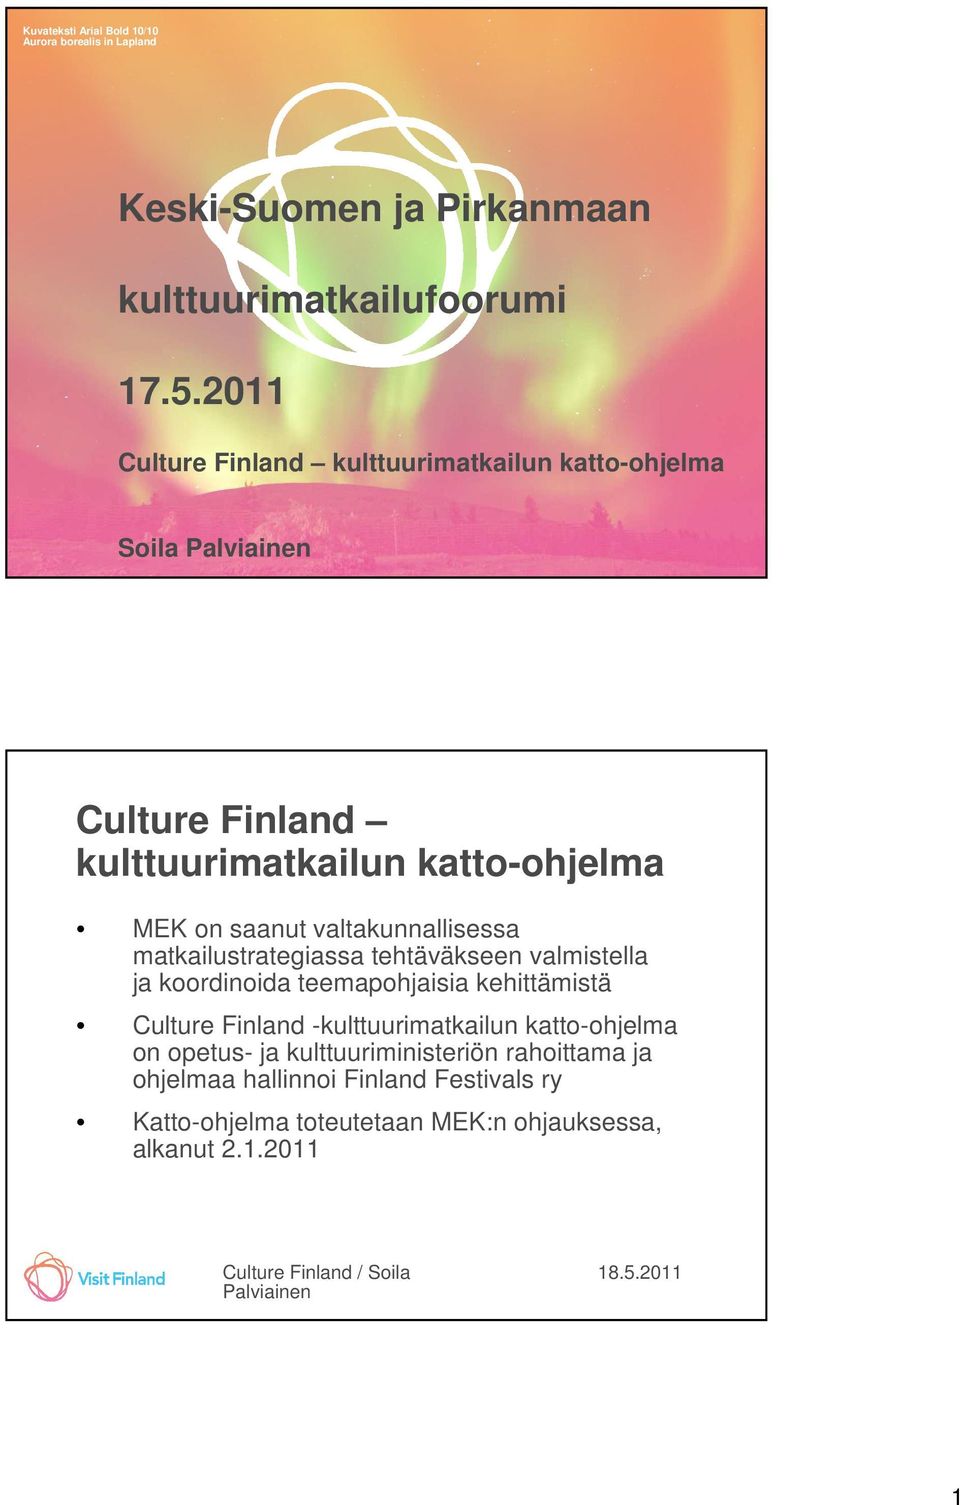 20 08 Culture Finland kulttuurimatkailun katto-ohjelma MEK on saanut valtakunnallisessa matkailustrategiassa tehtäväkseen valmistella ja koordinoida